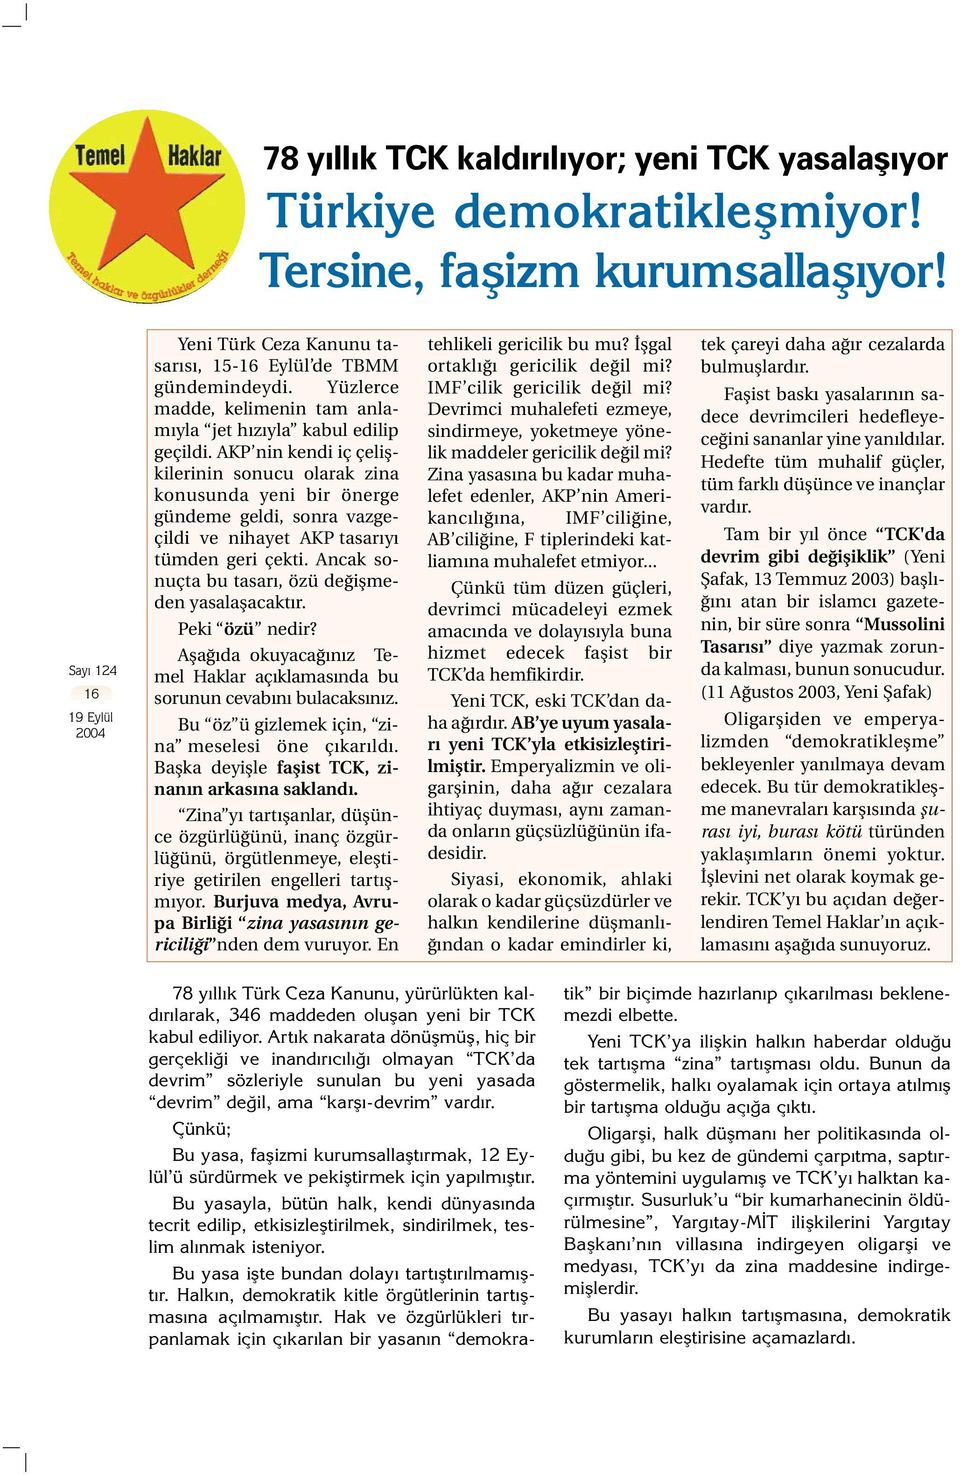 AKP nin kendi iç çelişkilerinin sonucu olarak zina konusunda yeni bir önerge gündeme geldi, sonra vazgeçildi ve nihayet AKP tasarıyı tümden geri çekti.